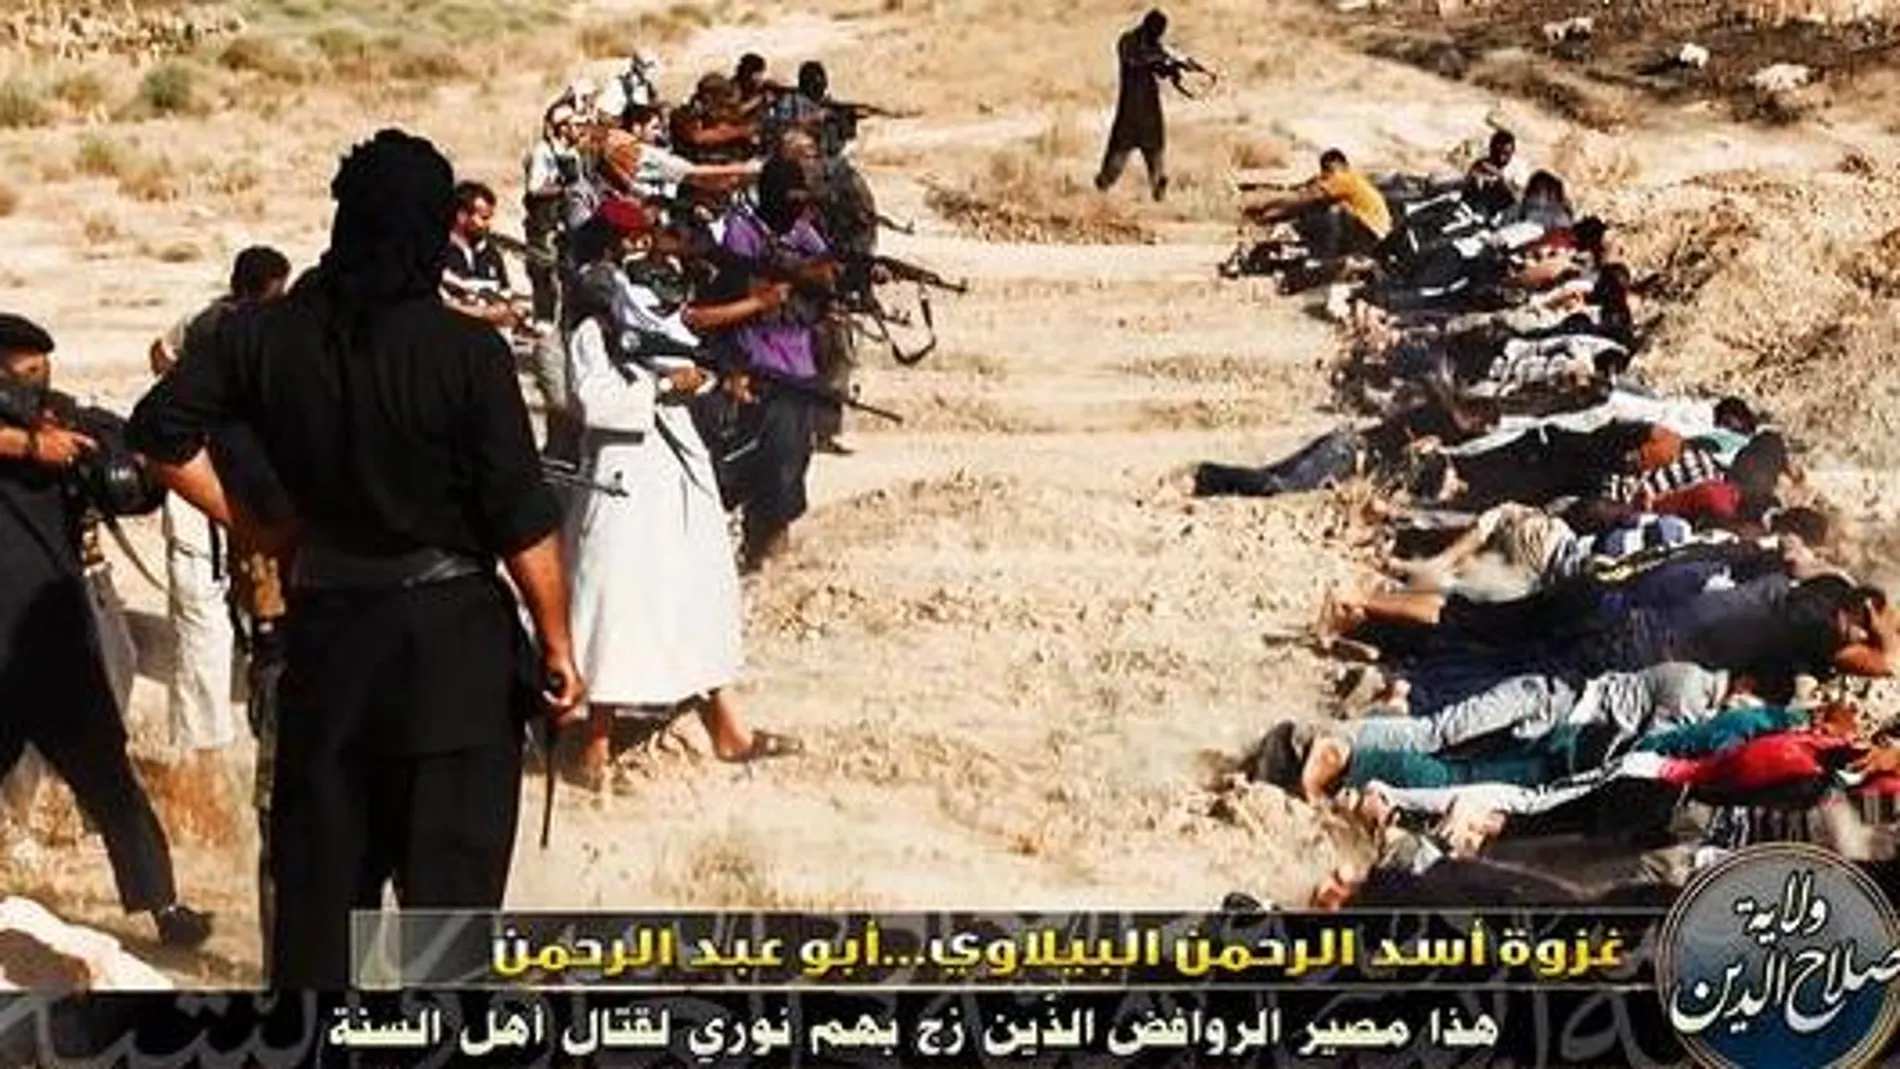 Una de las imágenes difundidas en Twitter por ISIS